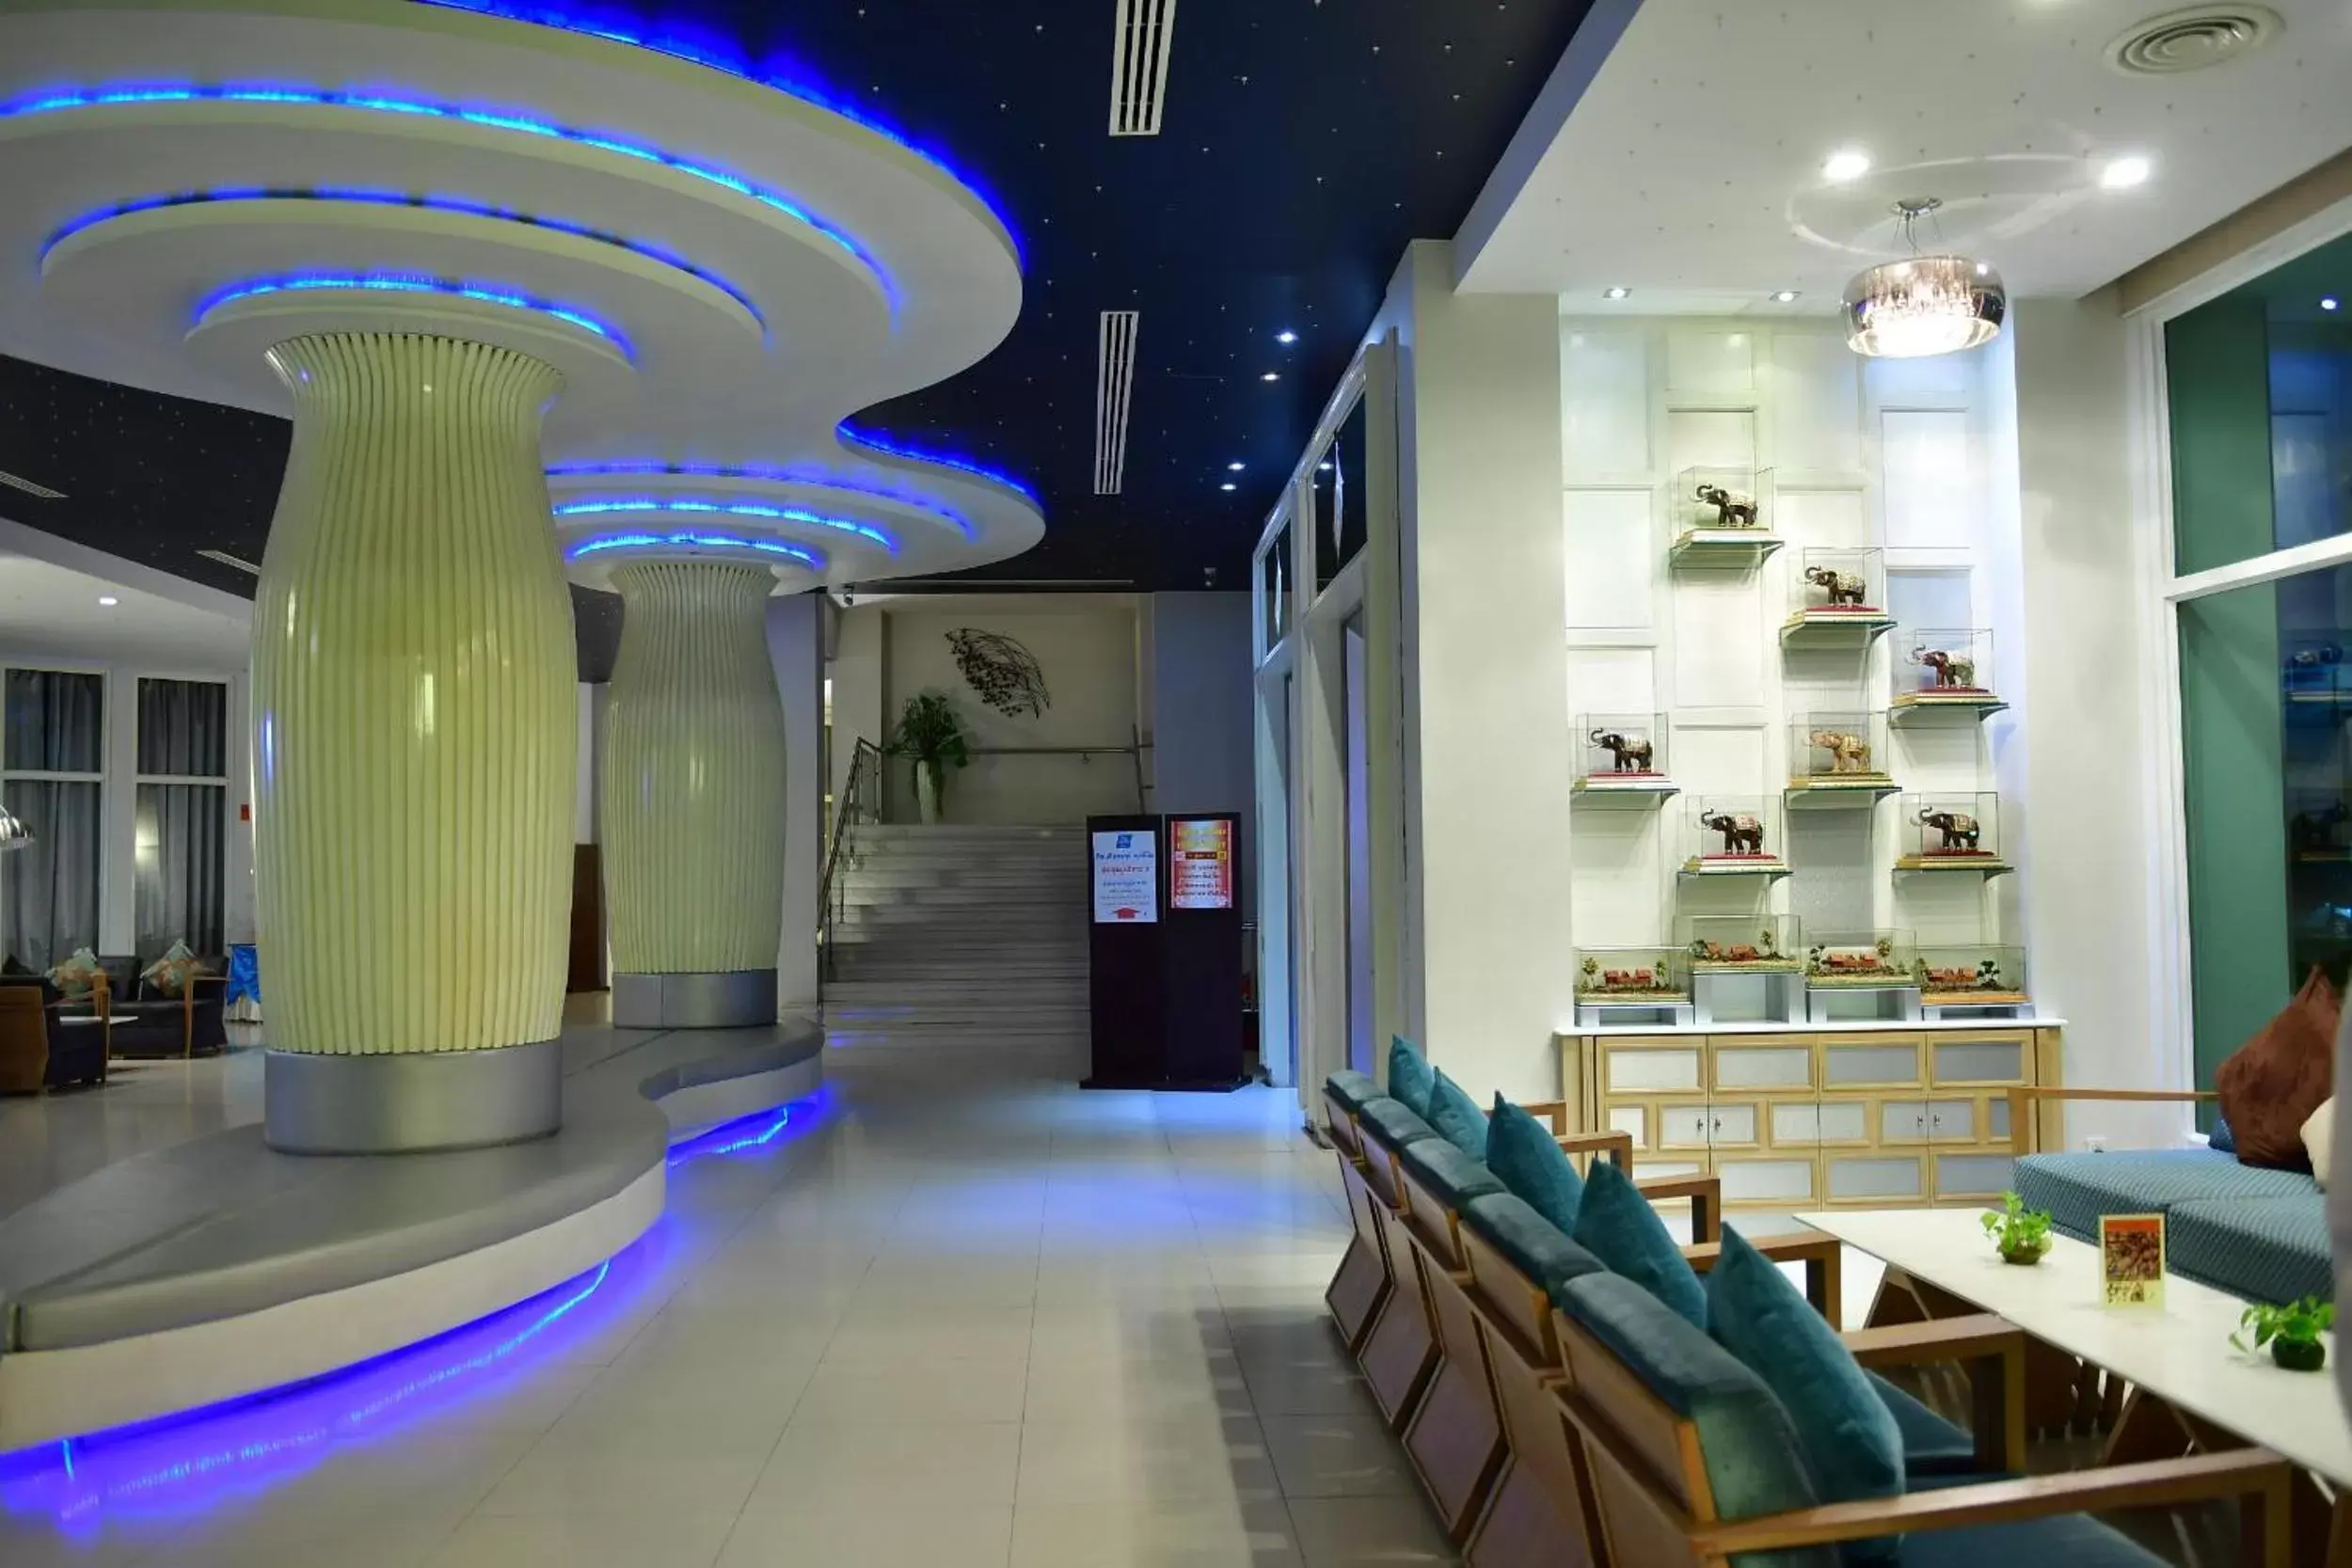 Lobby or reception, Lobby/Reception in Prajaktra Design Hotel